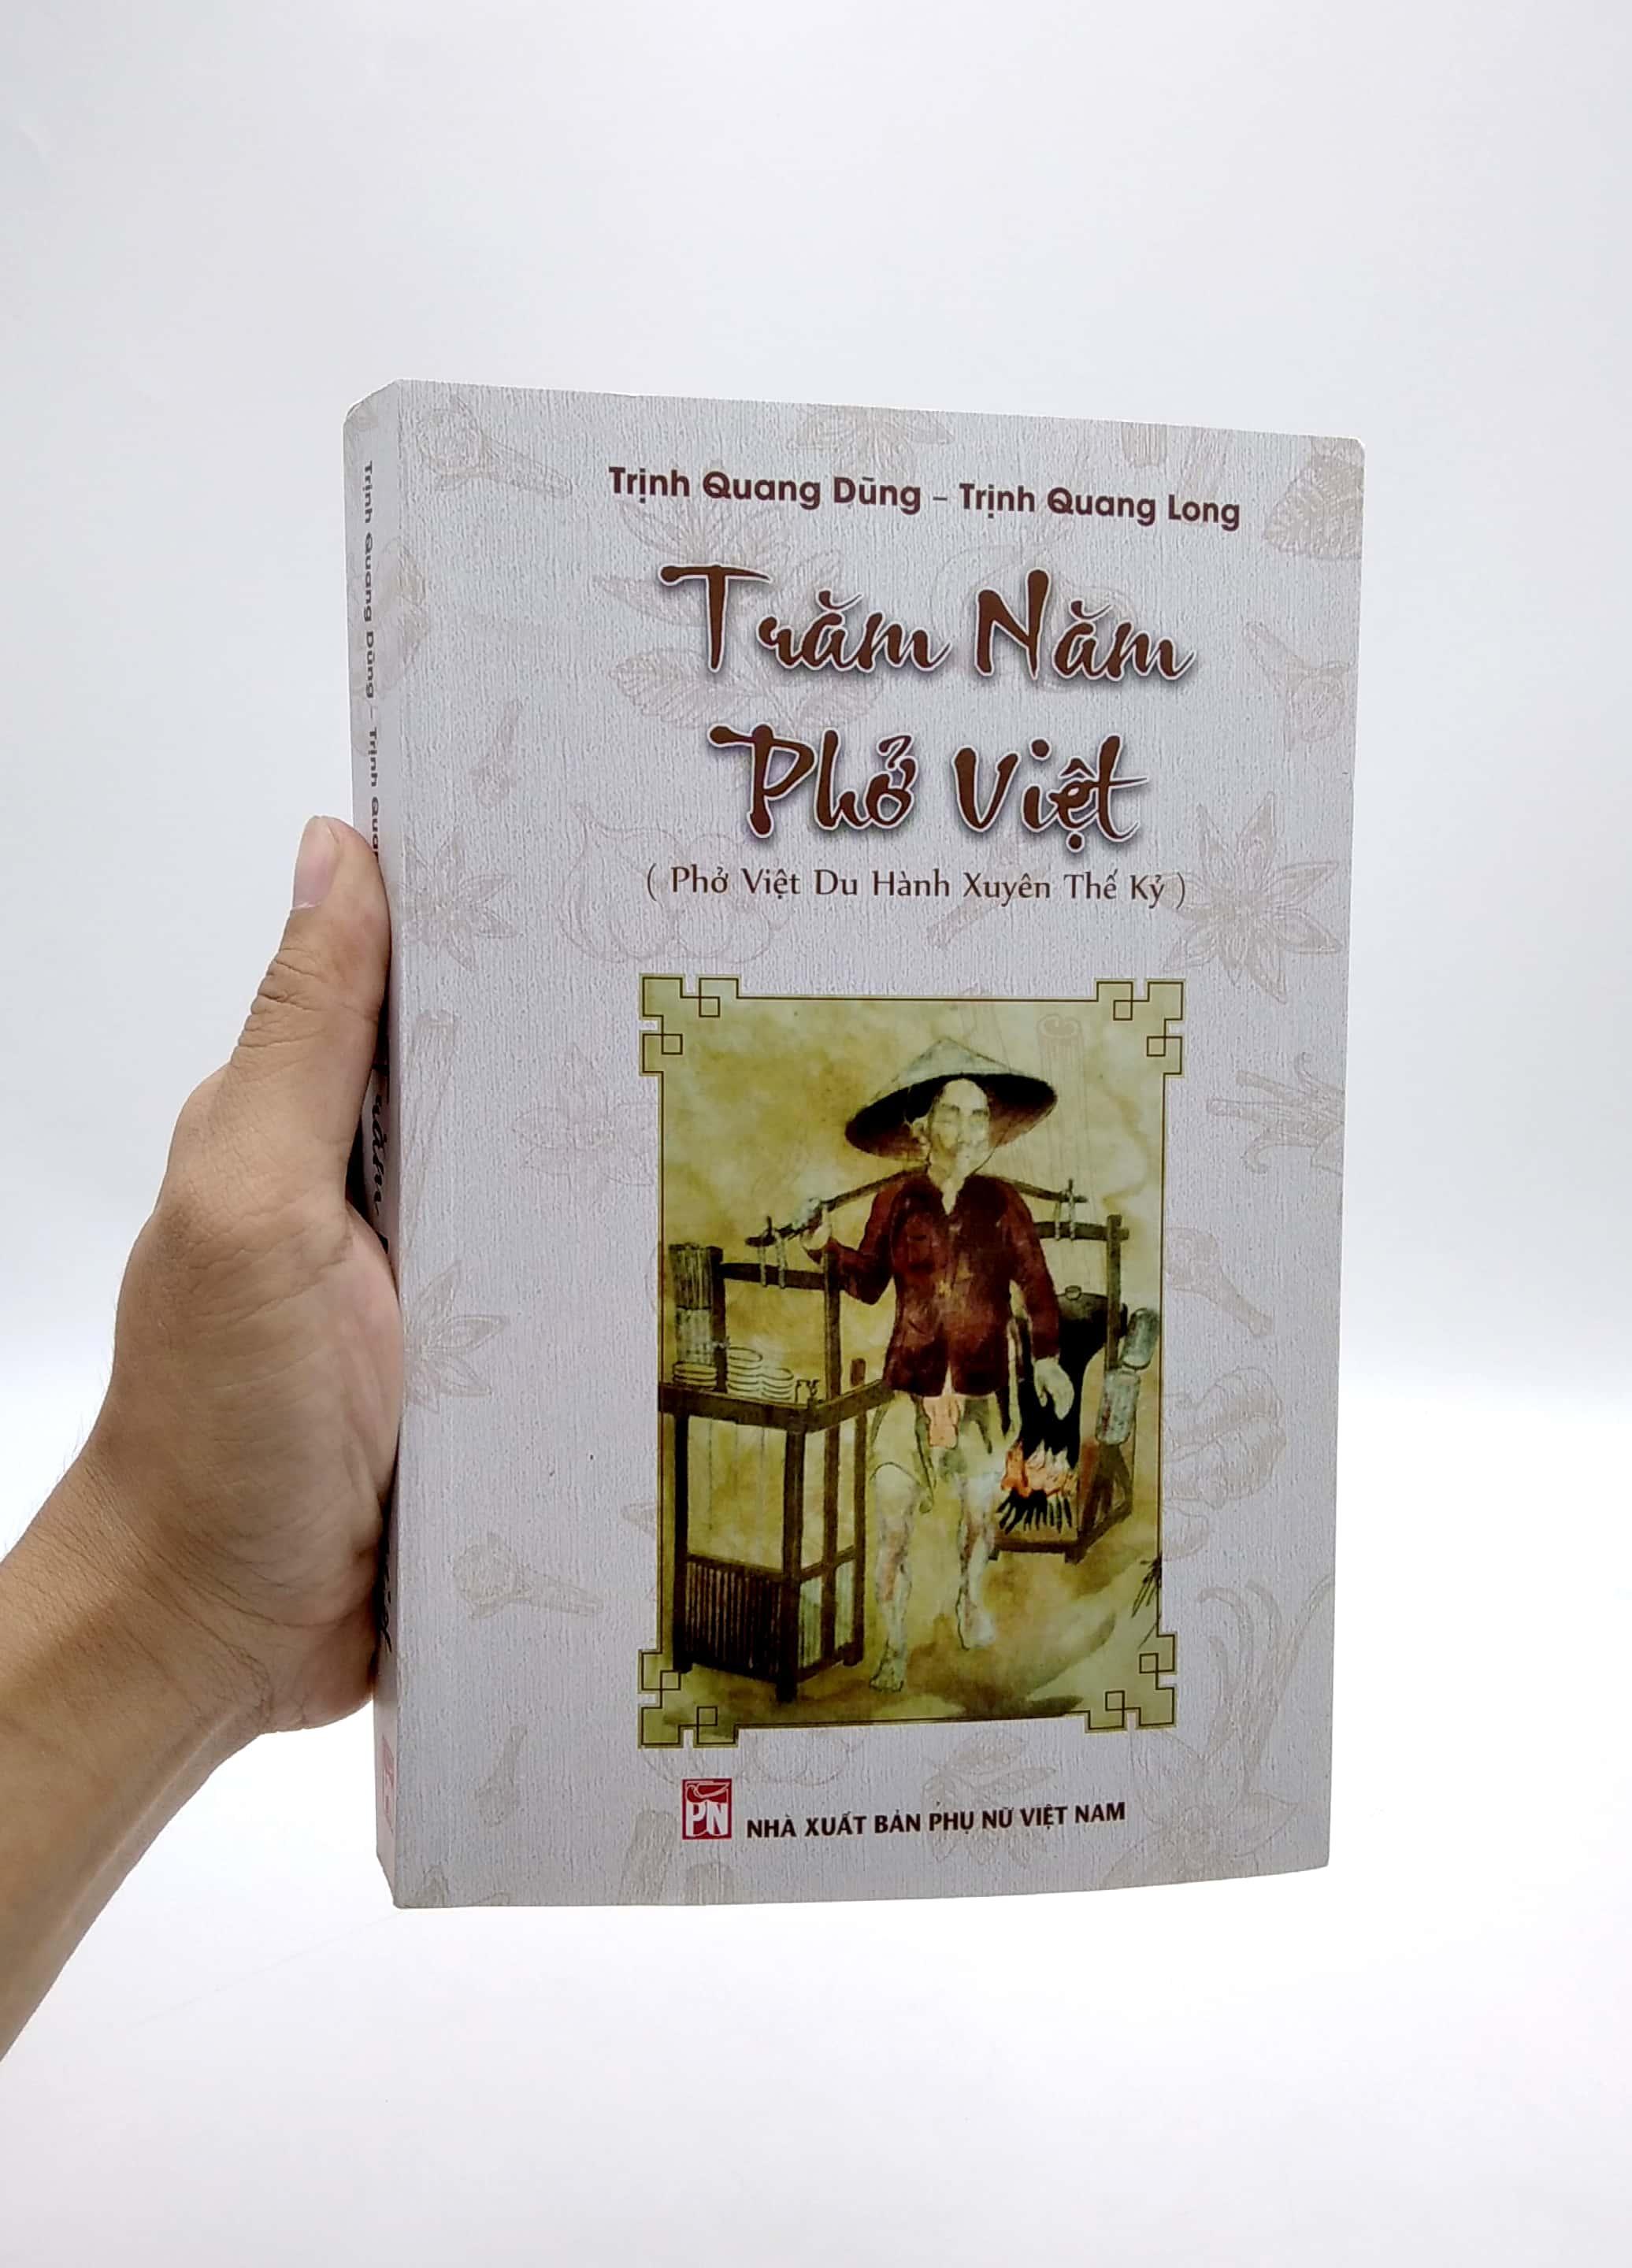 Trăm Năm Phở Việt (Phở Việt Du Hành Xuyên Thế Kỷ)